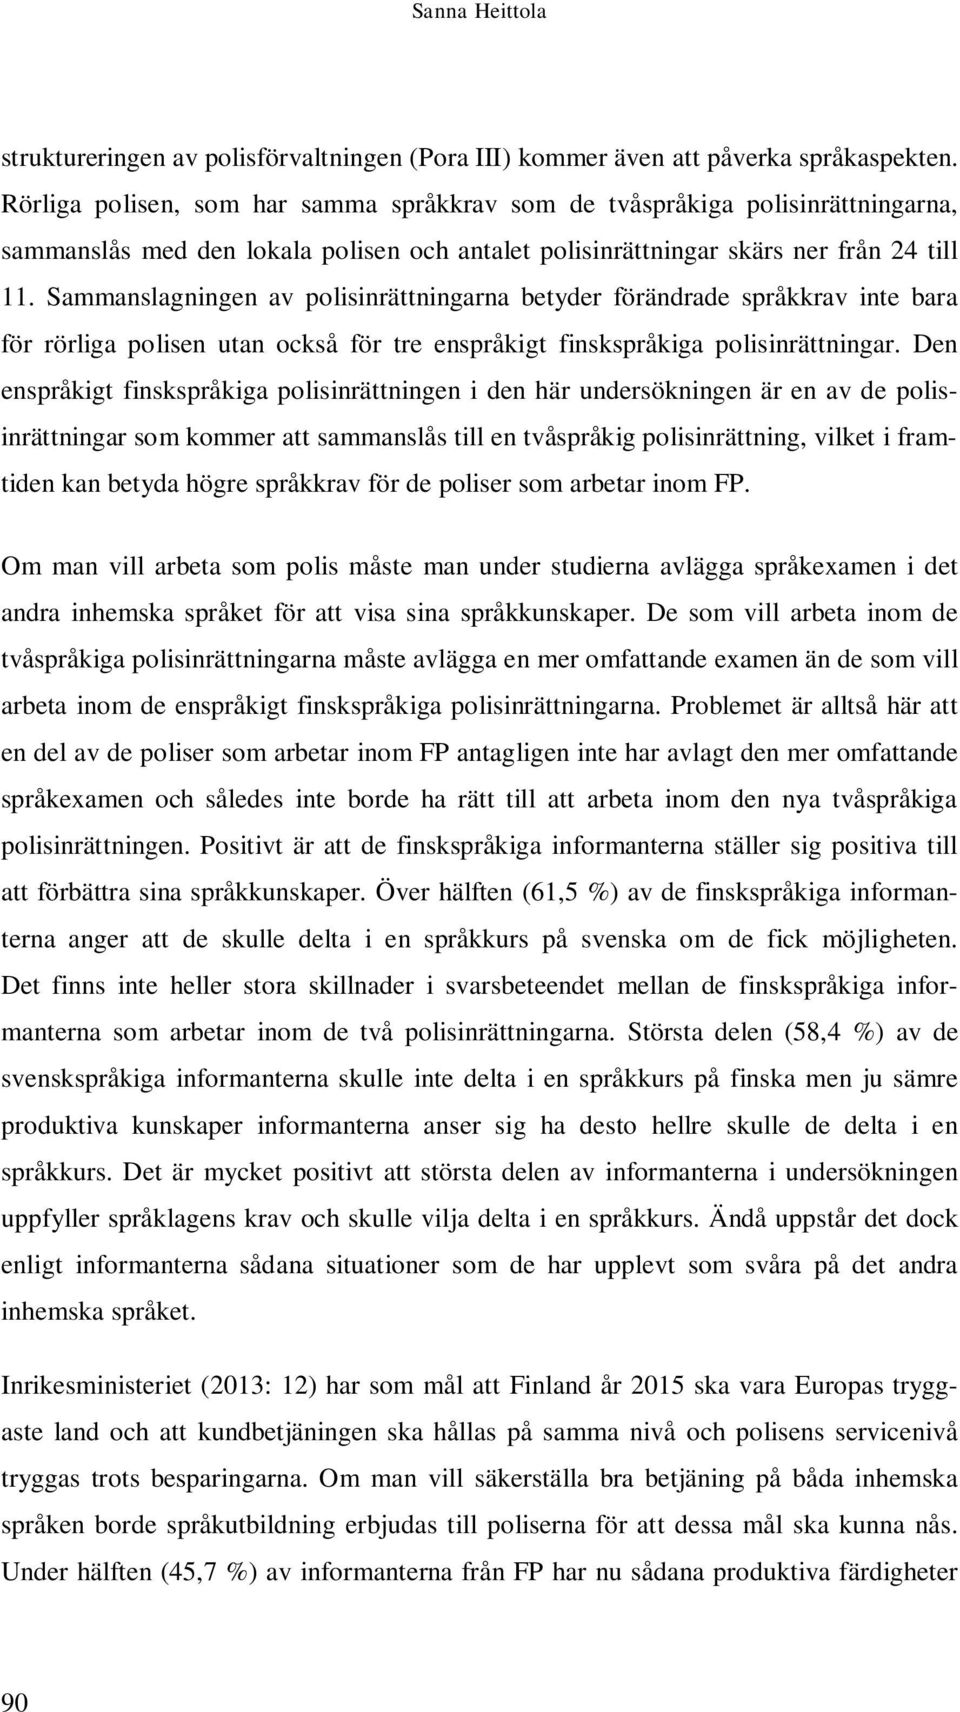 Sammanslagningen av polisinrättningarna betyder förändrade språkkrav inte bara för rörliga polisen utan också för tre enspråkigt finskspråkiga polisinrättningar.